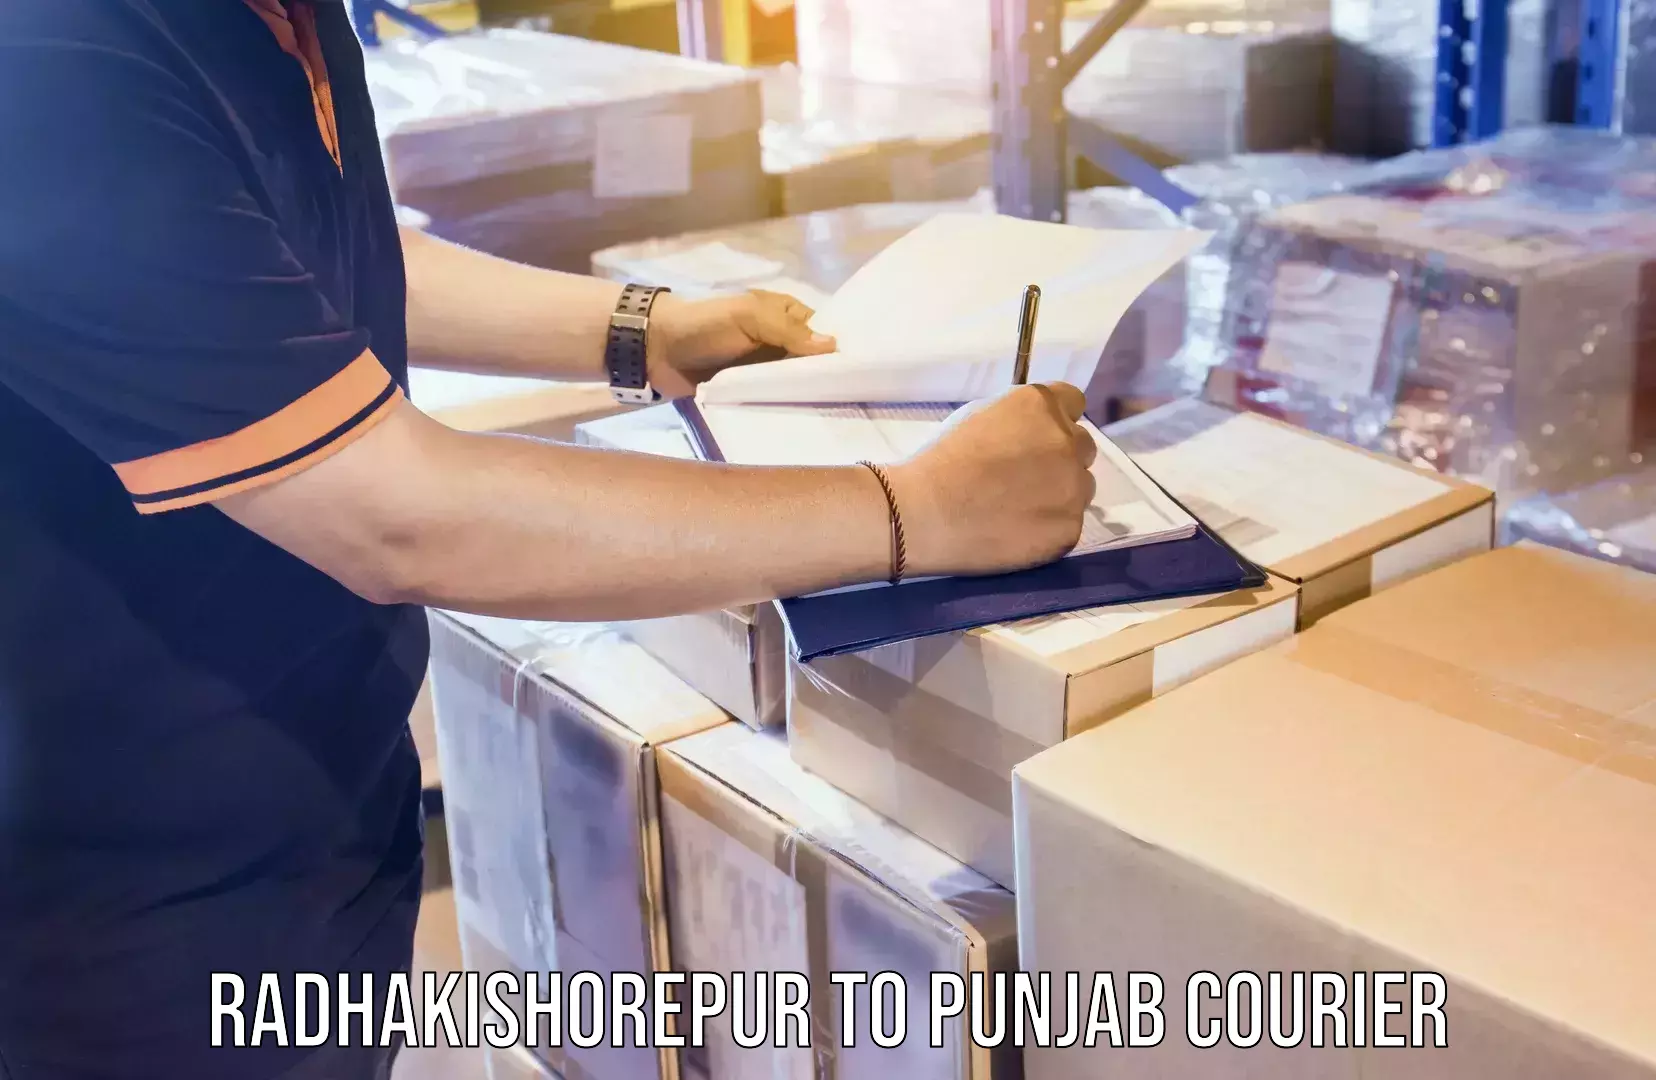 High-speed parcel service Radhakishorepur to Punjab